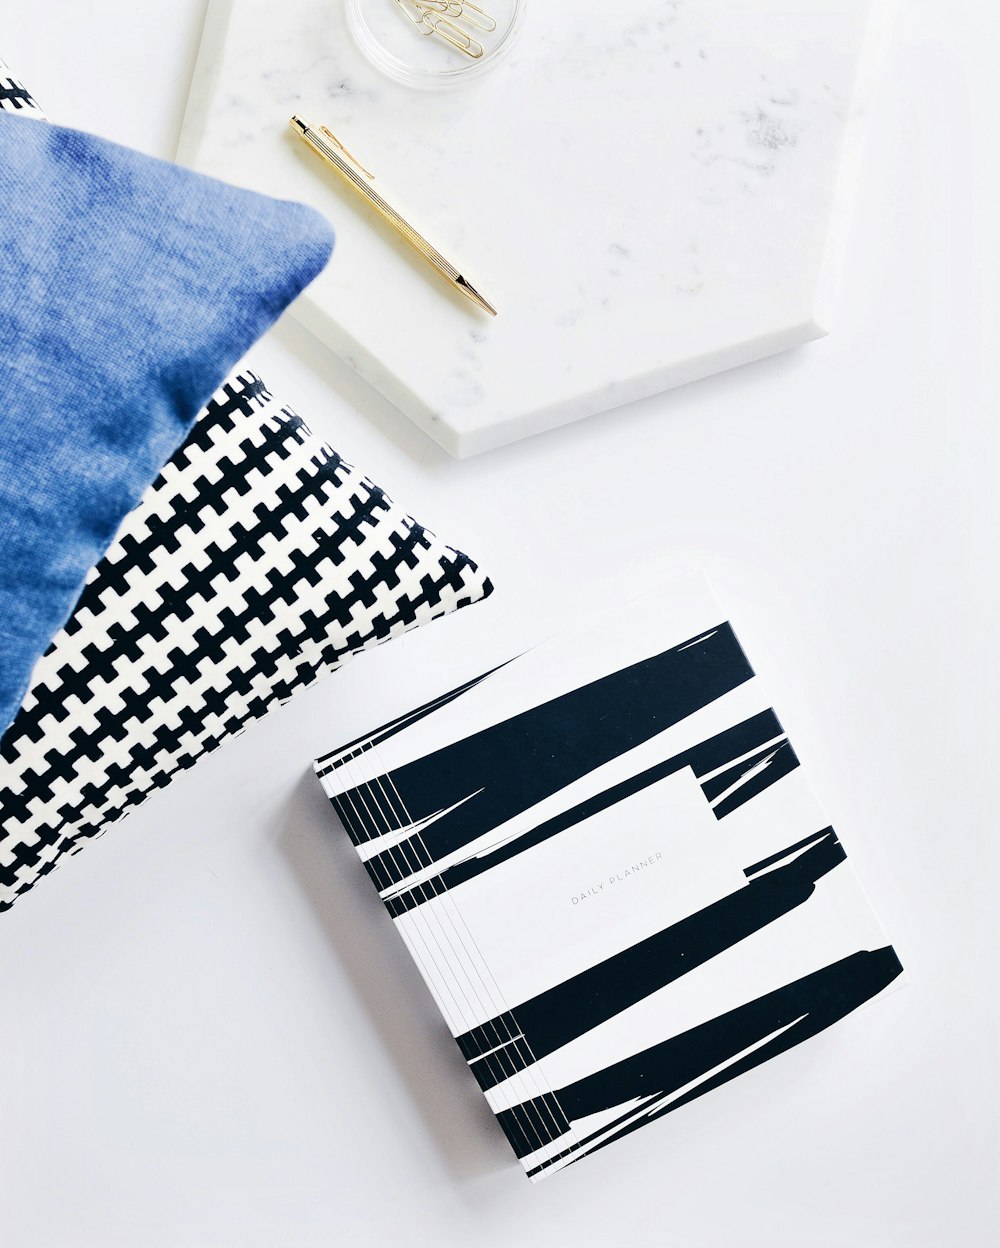 gray retractable pen beside blue textile